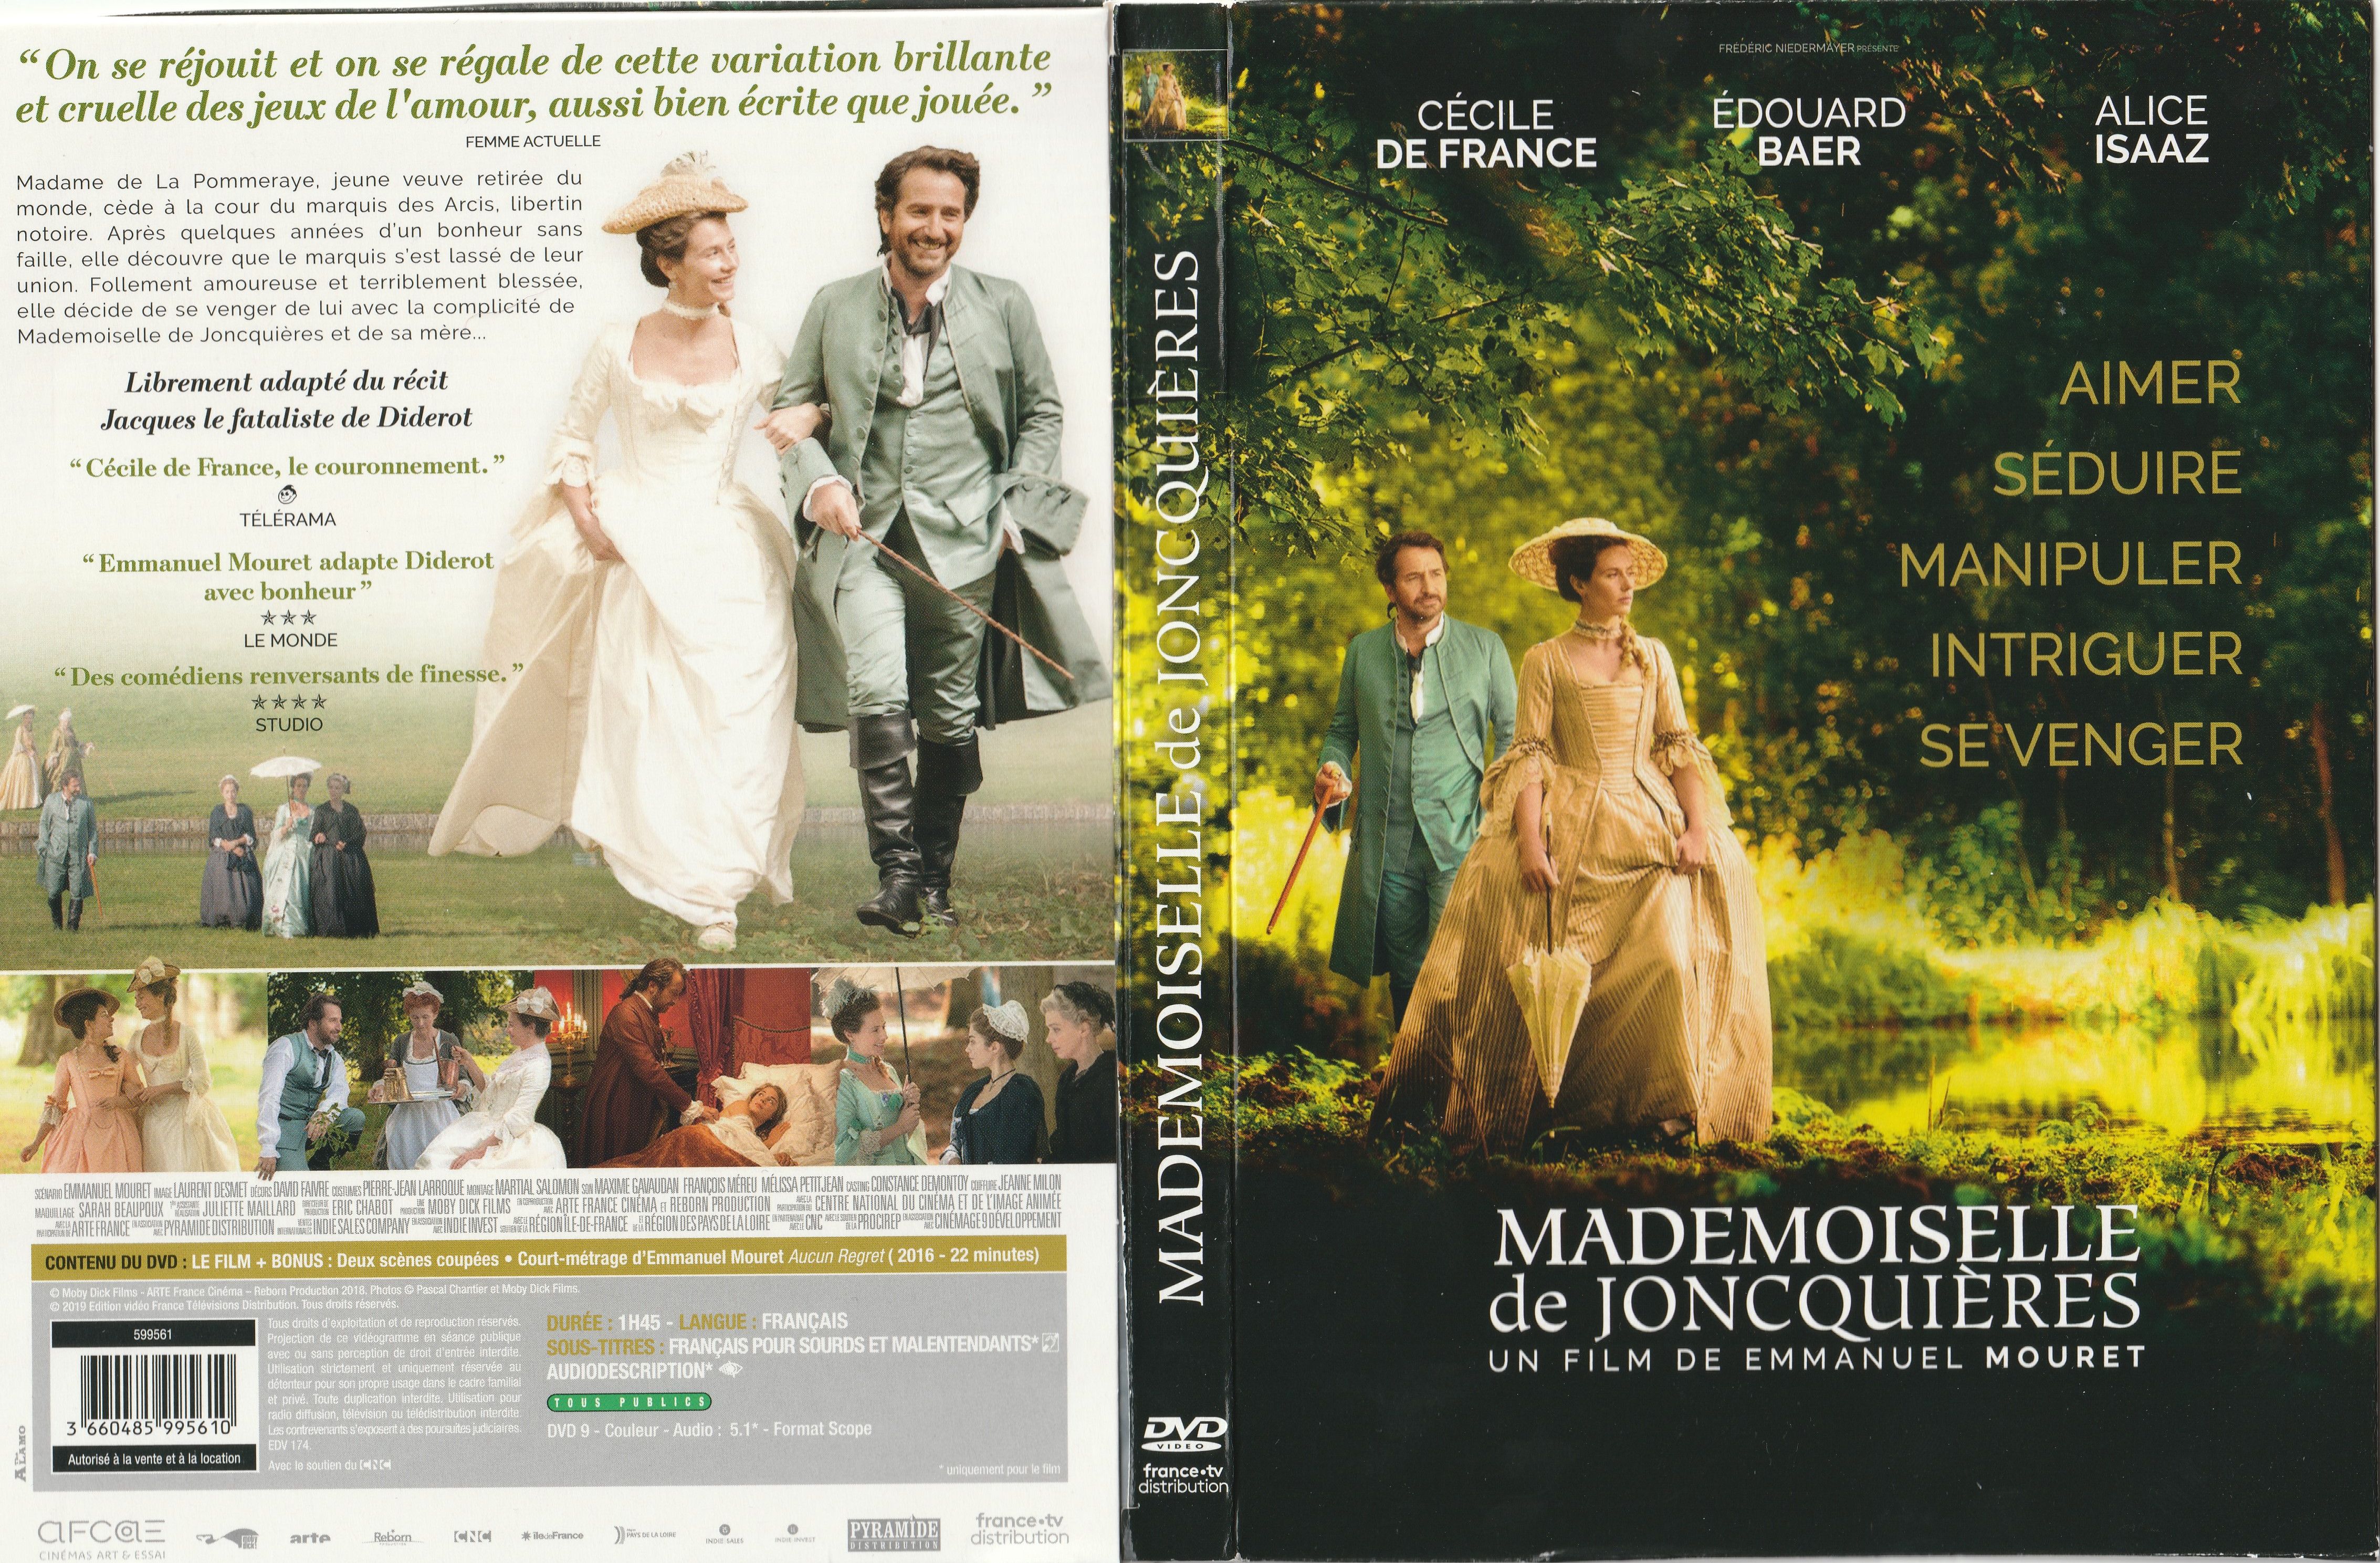 Jaquette DVD Mademoiselle de Joncquieres